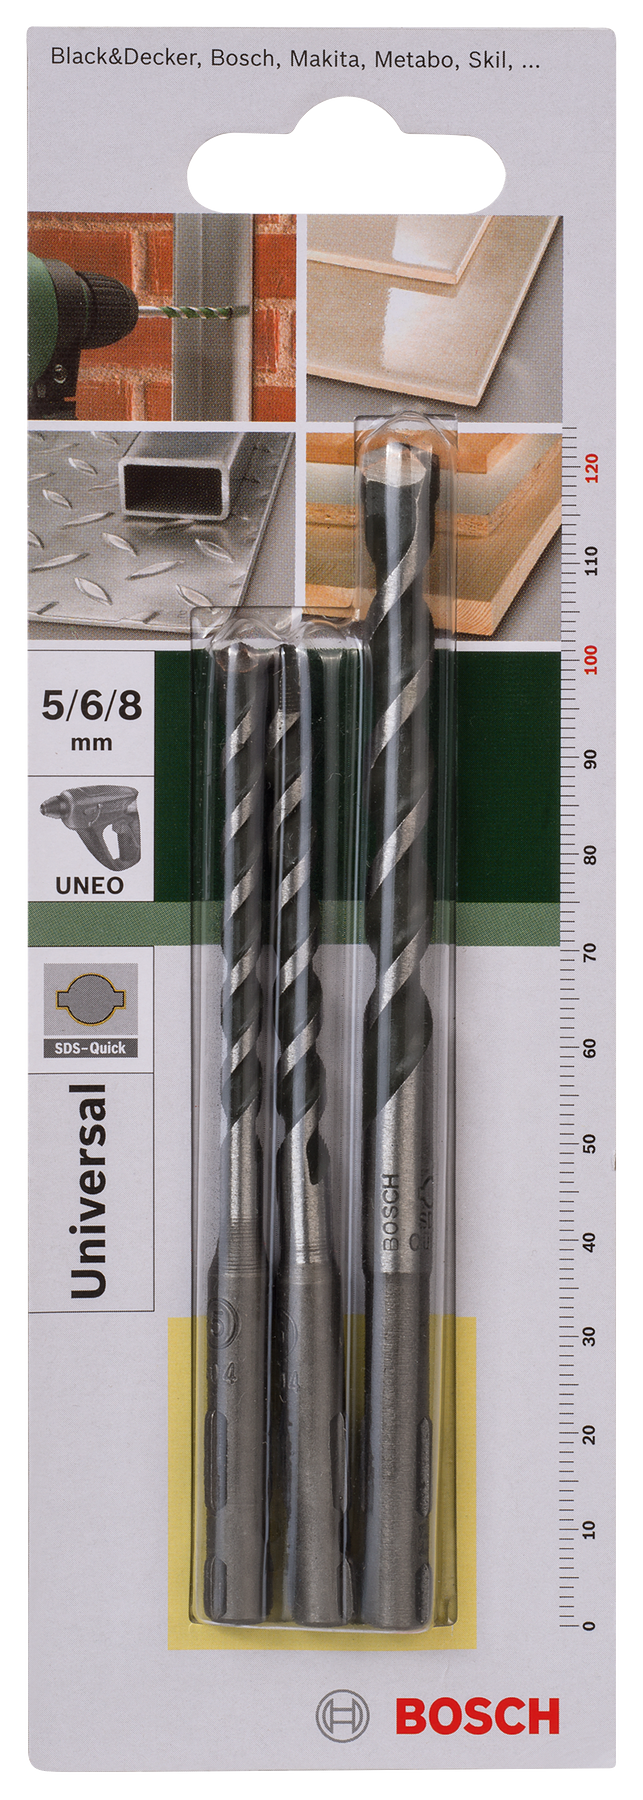 Bosch DIY Uneo Mehrzweckbohrer-Set für Beton mit SDS-Quick Ø 5/6/8 mm 3tlg.